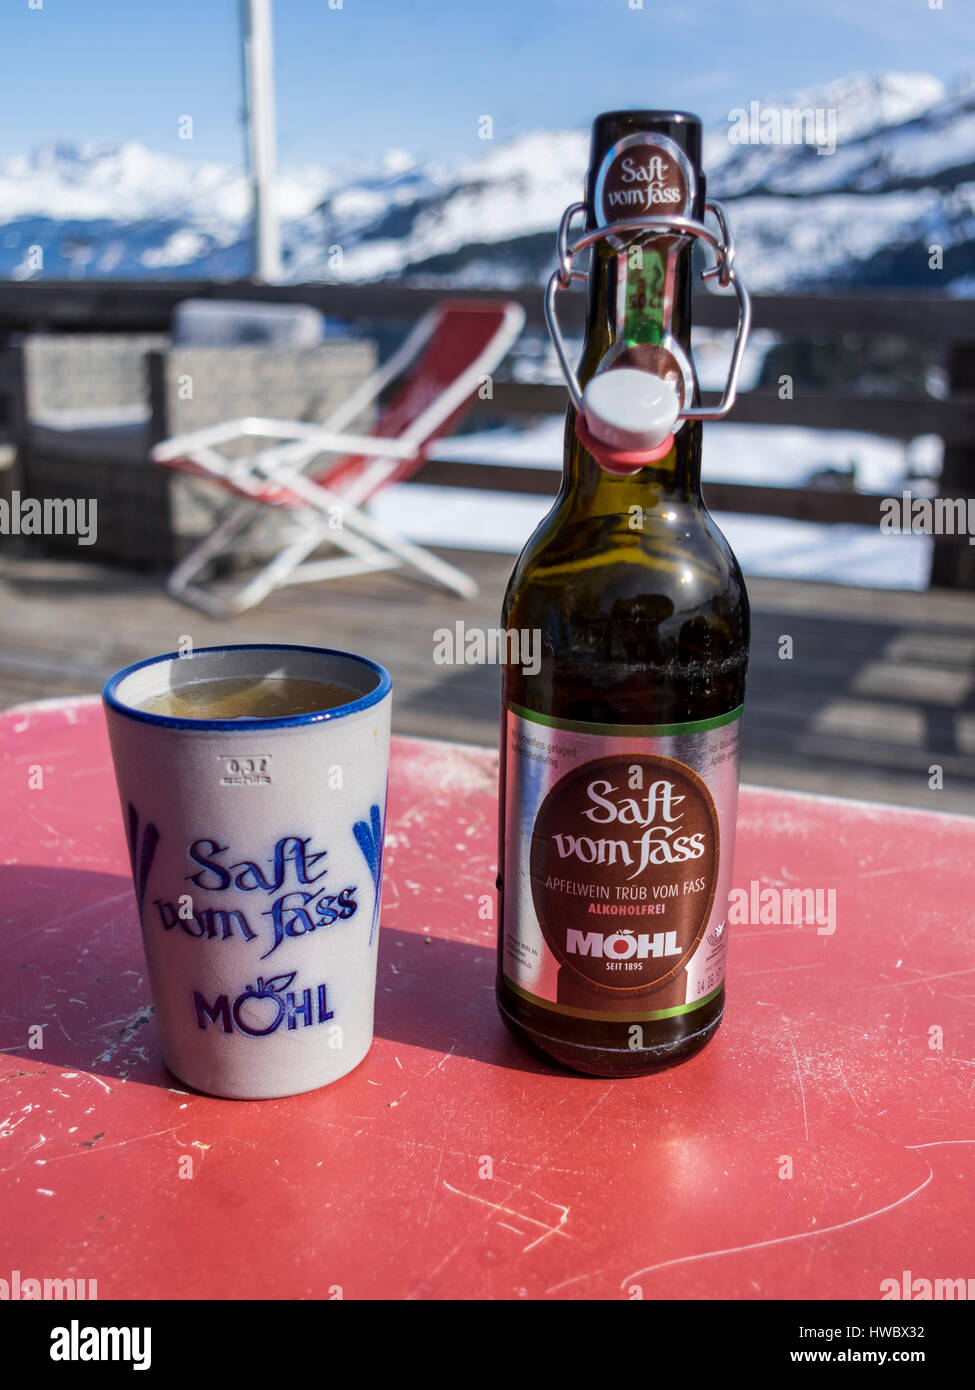 Eine Flasche alkoholfreien Möhl Apfelwein "Saft Vom Fass", einem traditionellen Schweizer Apfelwein mit einem Keramik-Becher. Alpine Hintergrund. Stockfoto